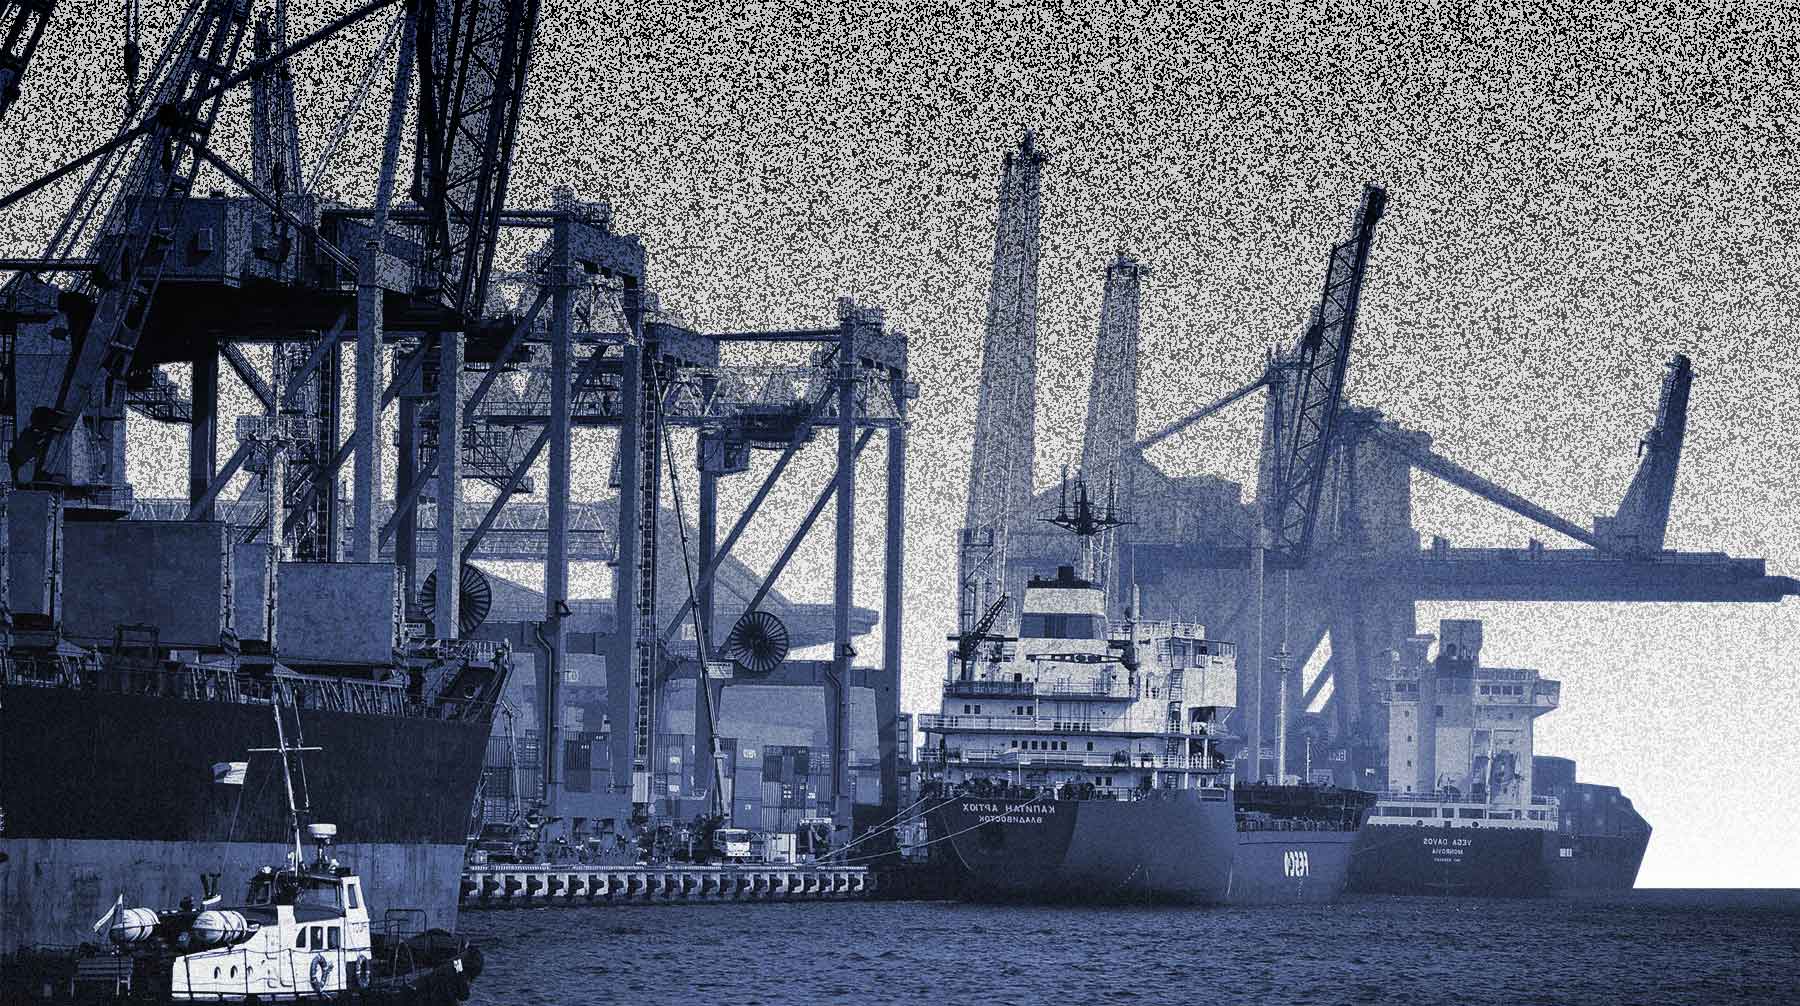 Вместо установки защитных экранов за сотни миллионов владельцы портов платили формальные штрафы. Теперь им грозят закрытием Коллаж: © Daily Storm